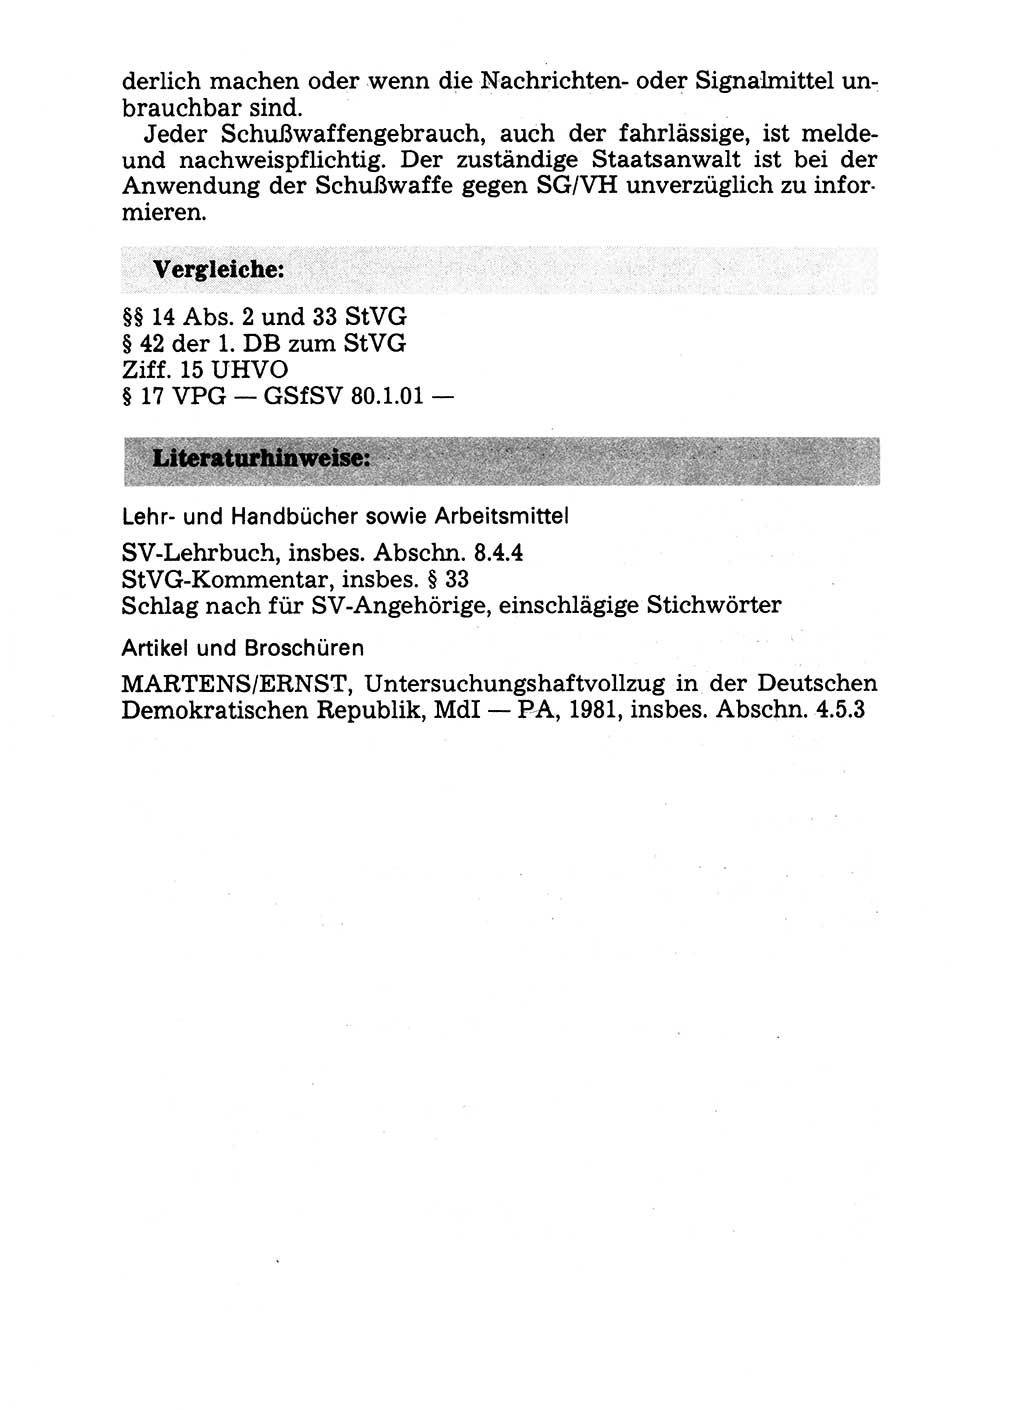 Handbuch für operative Dienste, Abteilung Strafvollzug (SV) [Ministerium des Innern (MdI) Deutsche Demokratische Republik (DDR)] 1981, Seite 44 (Hb. op. D. Abt. SV MdI DDR 1981, S. 44)